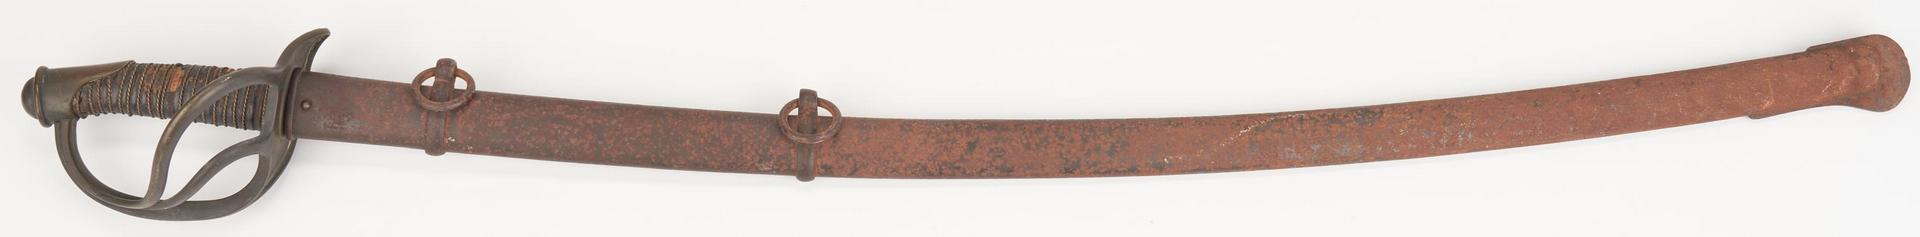 Lot 610: Civil War M1840 Sword, Capt. Richard Myers, KY